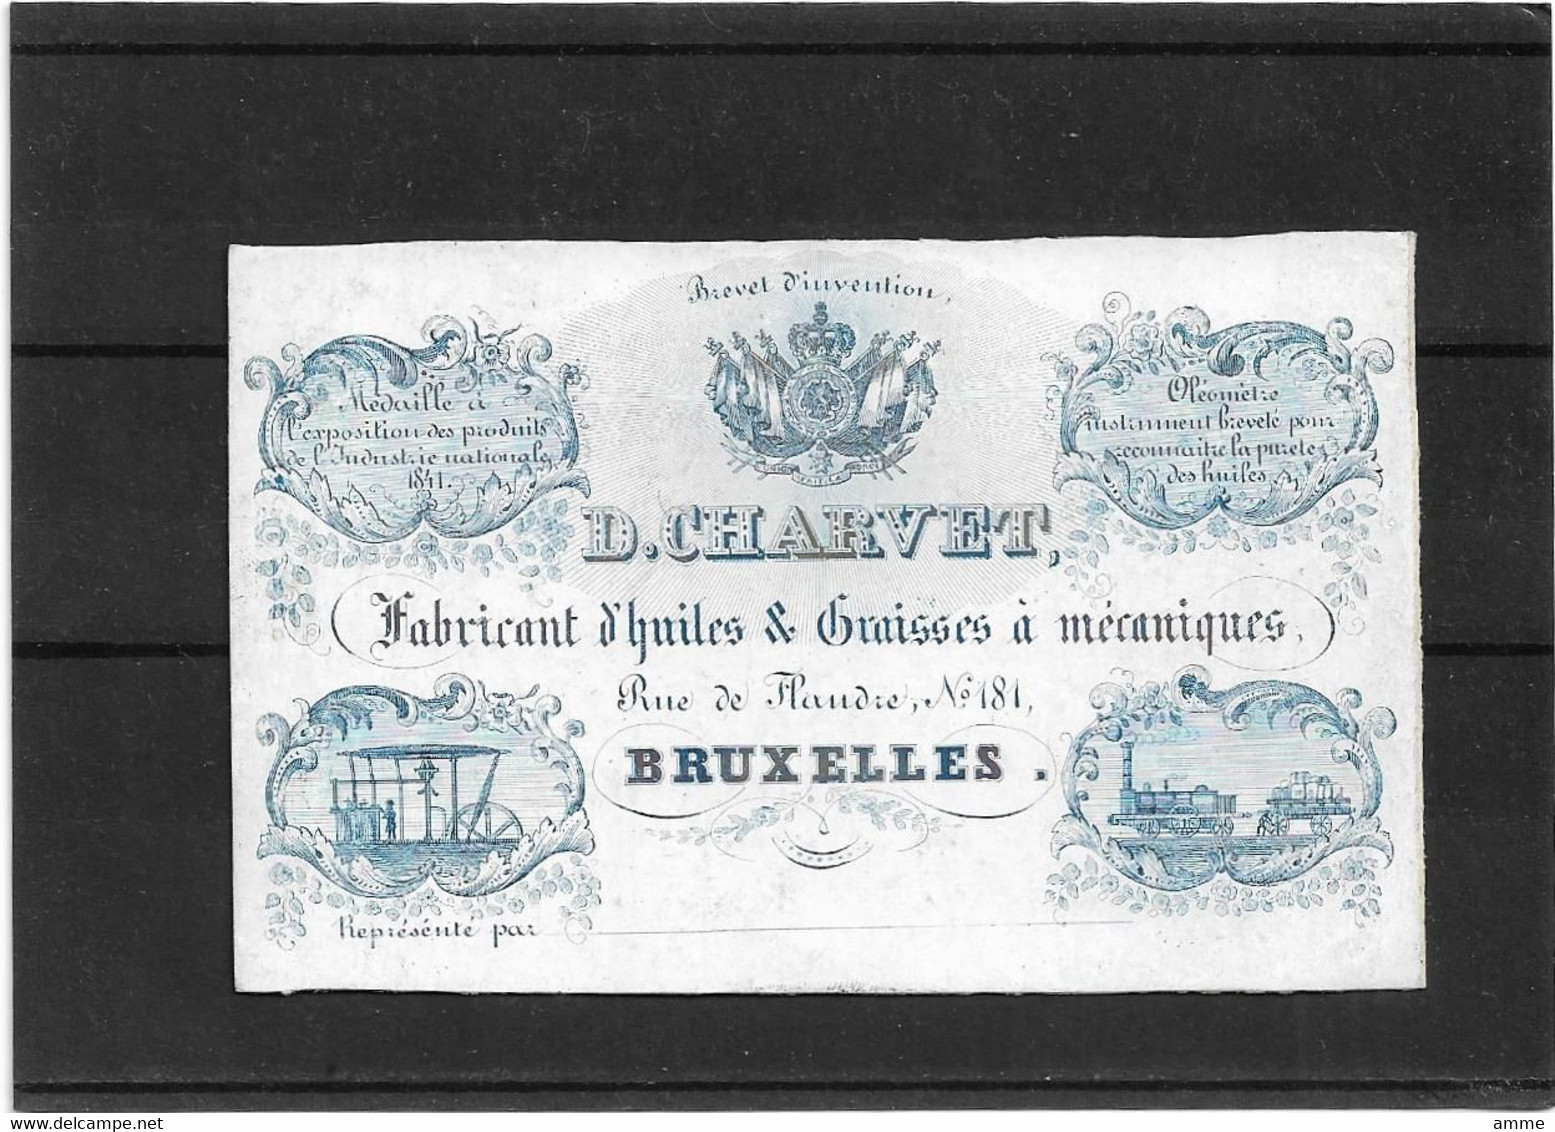 Bruxelles *  (Carte Porcelaine)  D. Charvet - Fabricant D'huiles & Graisses à Mécaniques (Rue De Flandre, 181) - Porzellan